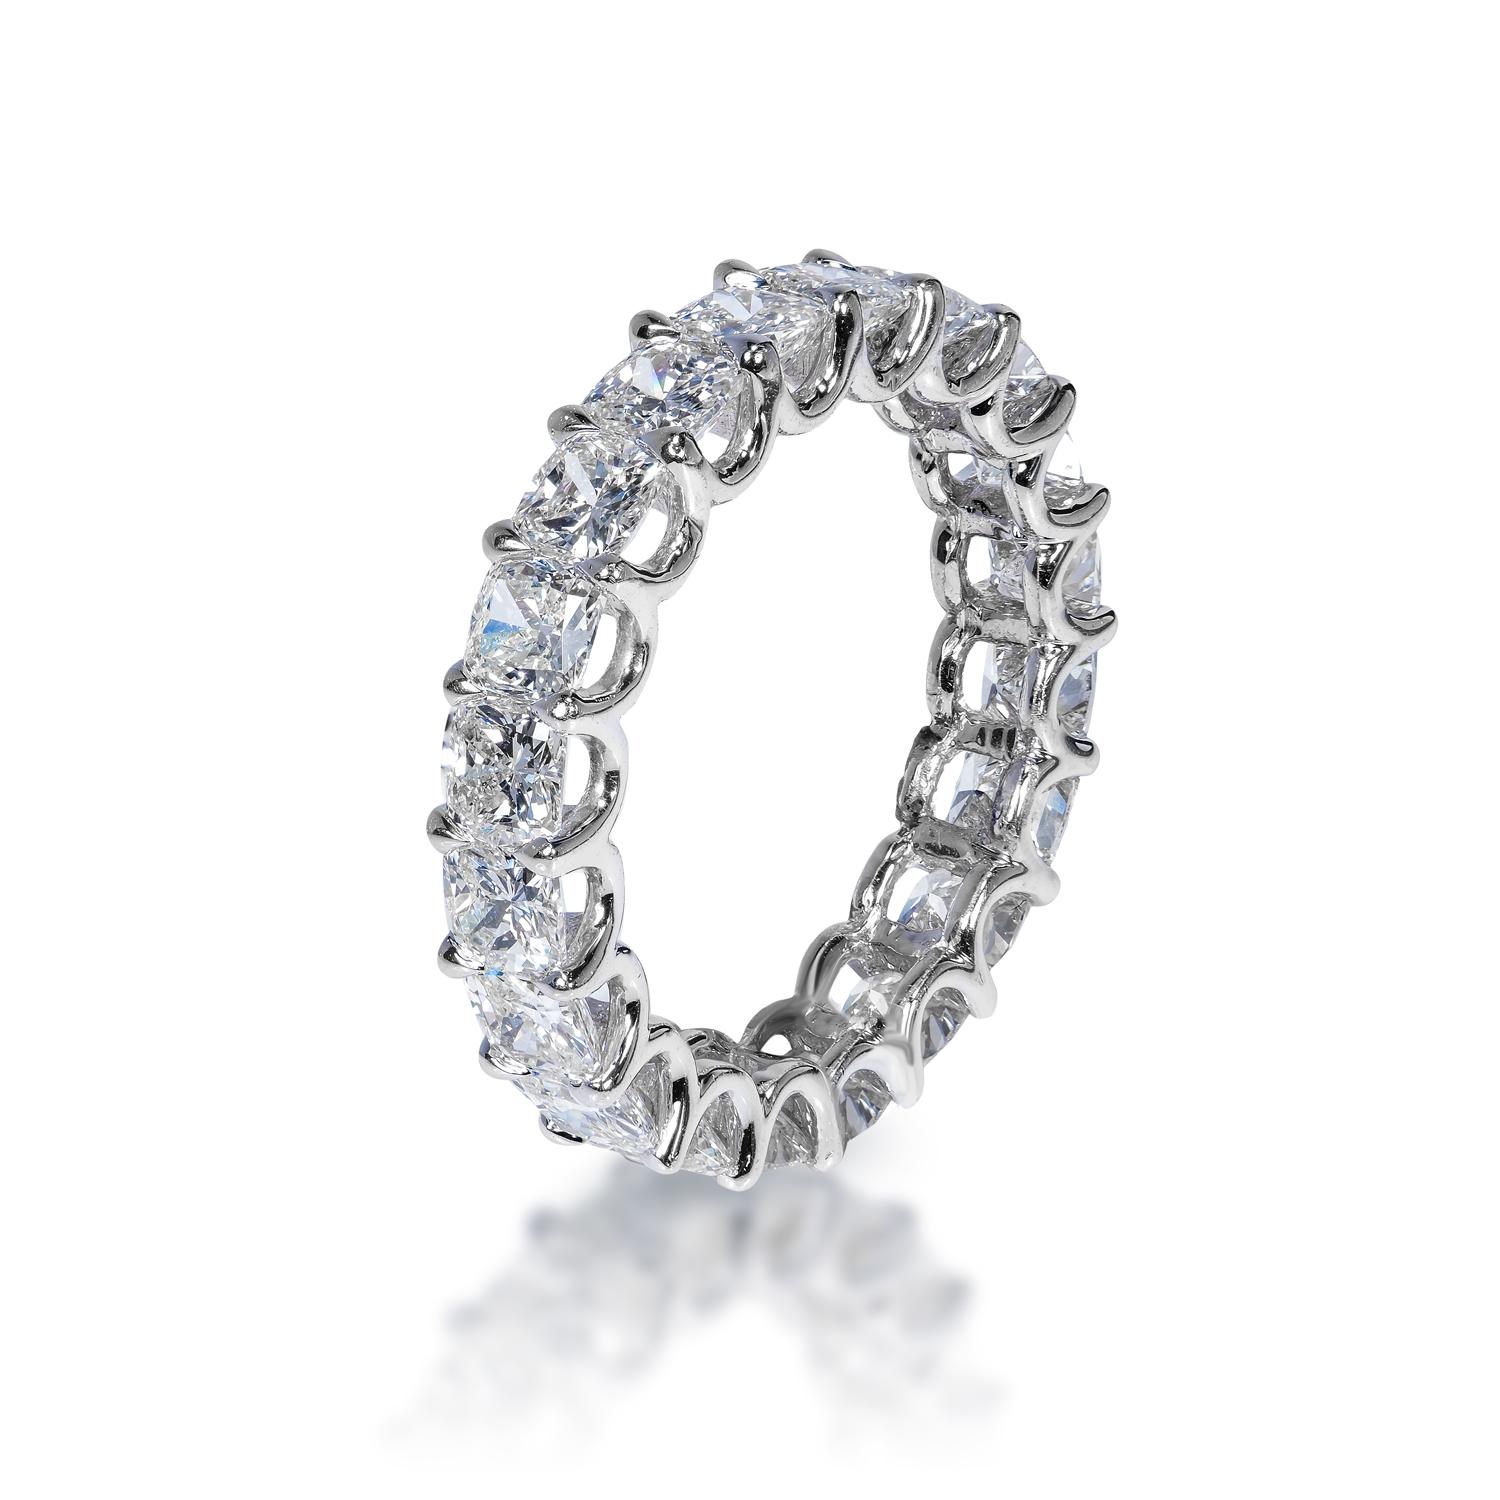 Les diamants :
Poids en carats : 3,93 carats
Style : Coupe coussin

Cadre : Forme en U à tenons partagés 
Métal : or blanc 18 carats

Poids total en carats: : 3.93 Carats